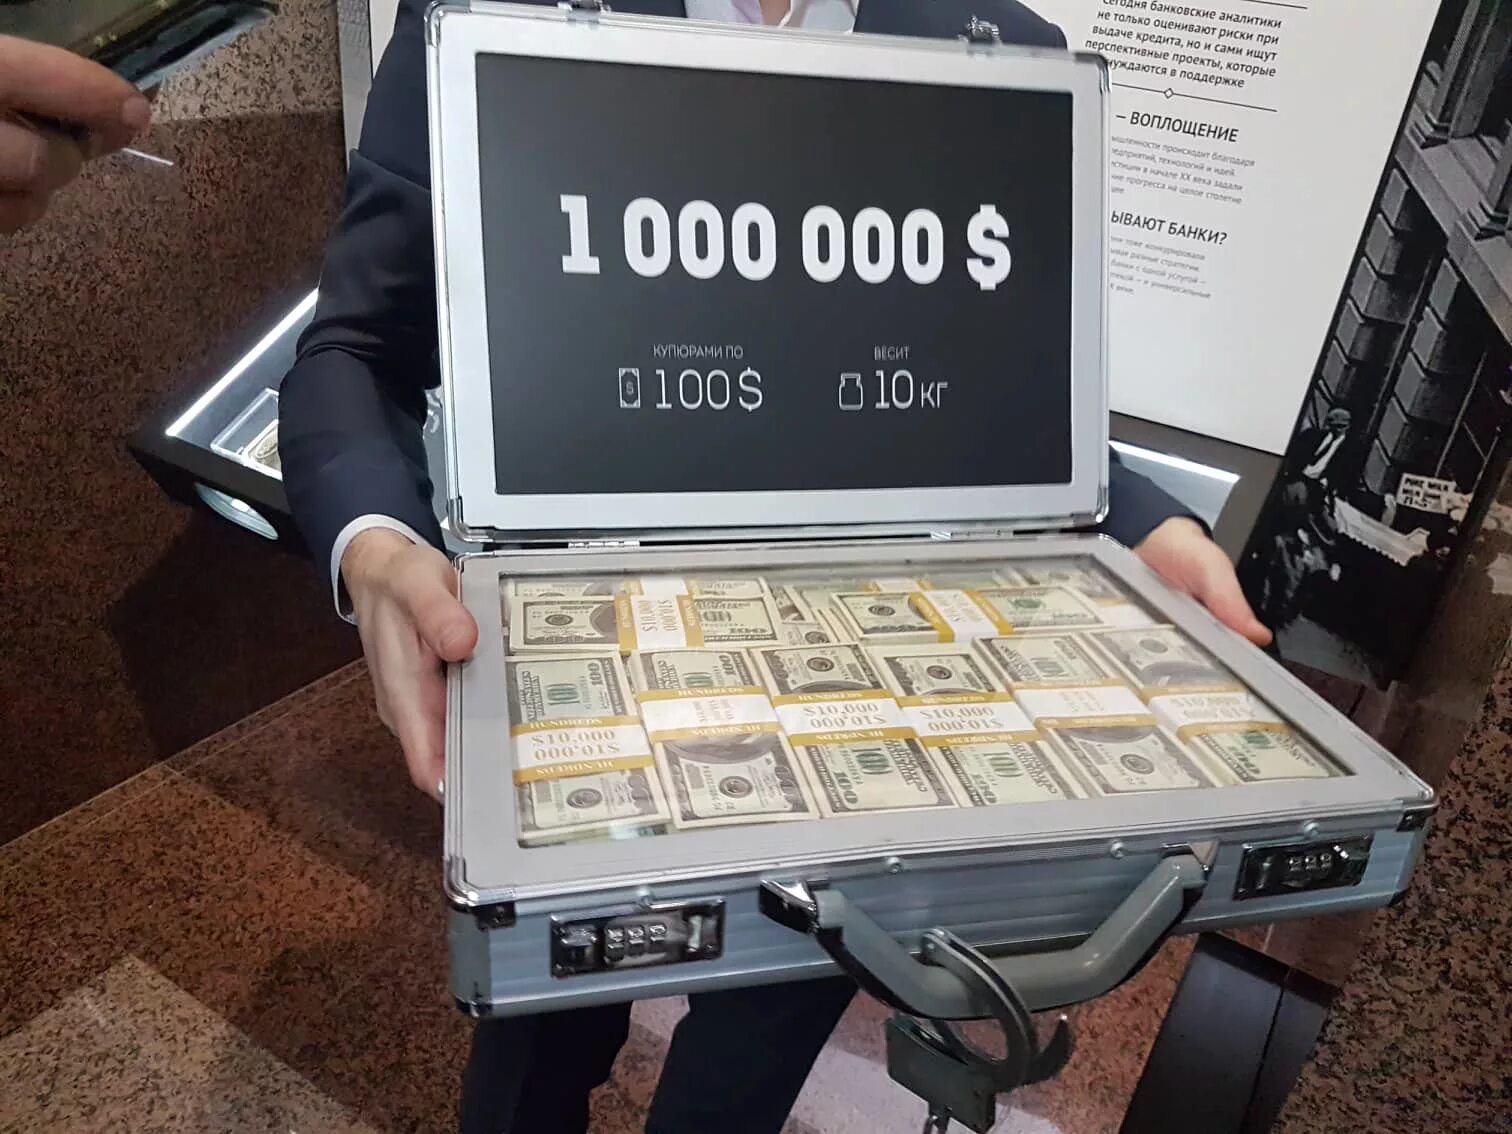 Сто миллионов рублей сколько. Миллион долларов. 1 Миллион долларов. Как выглядит миллион долларов. Как выглядет милион доларов.